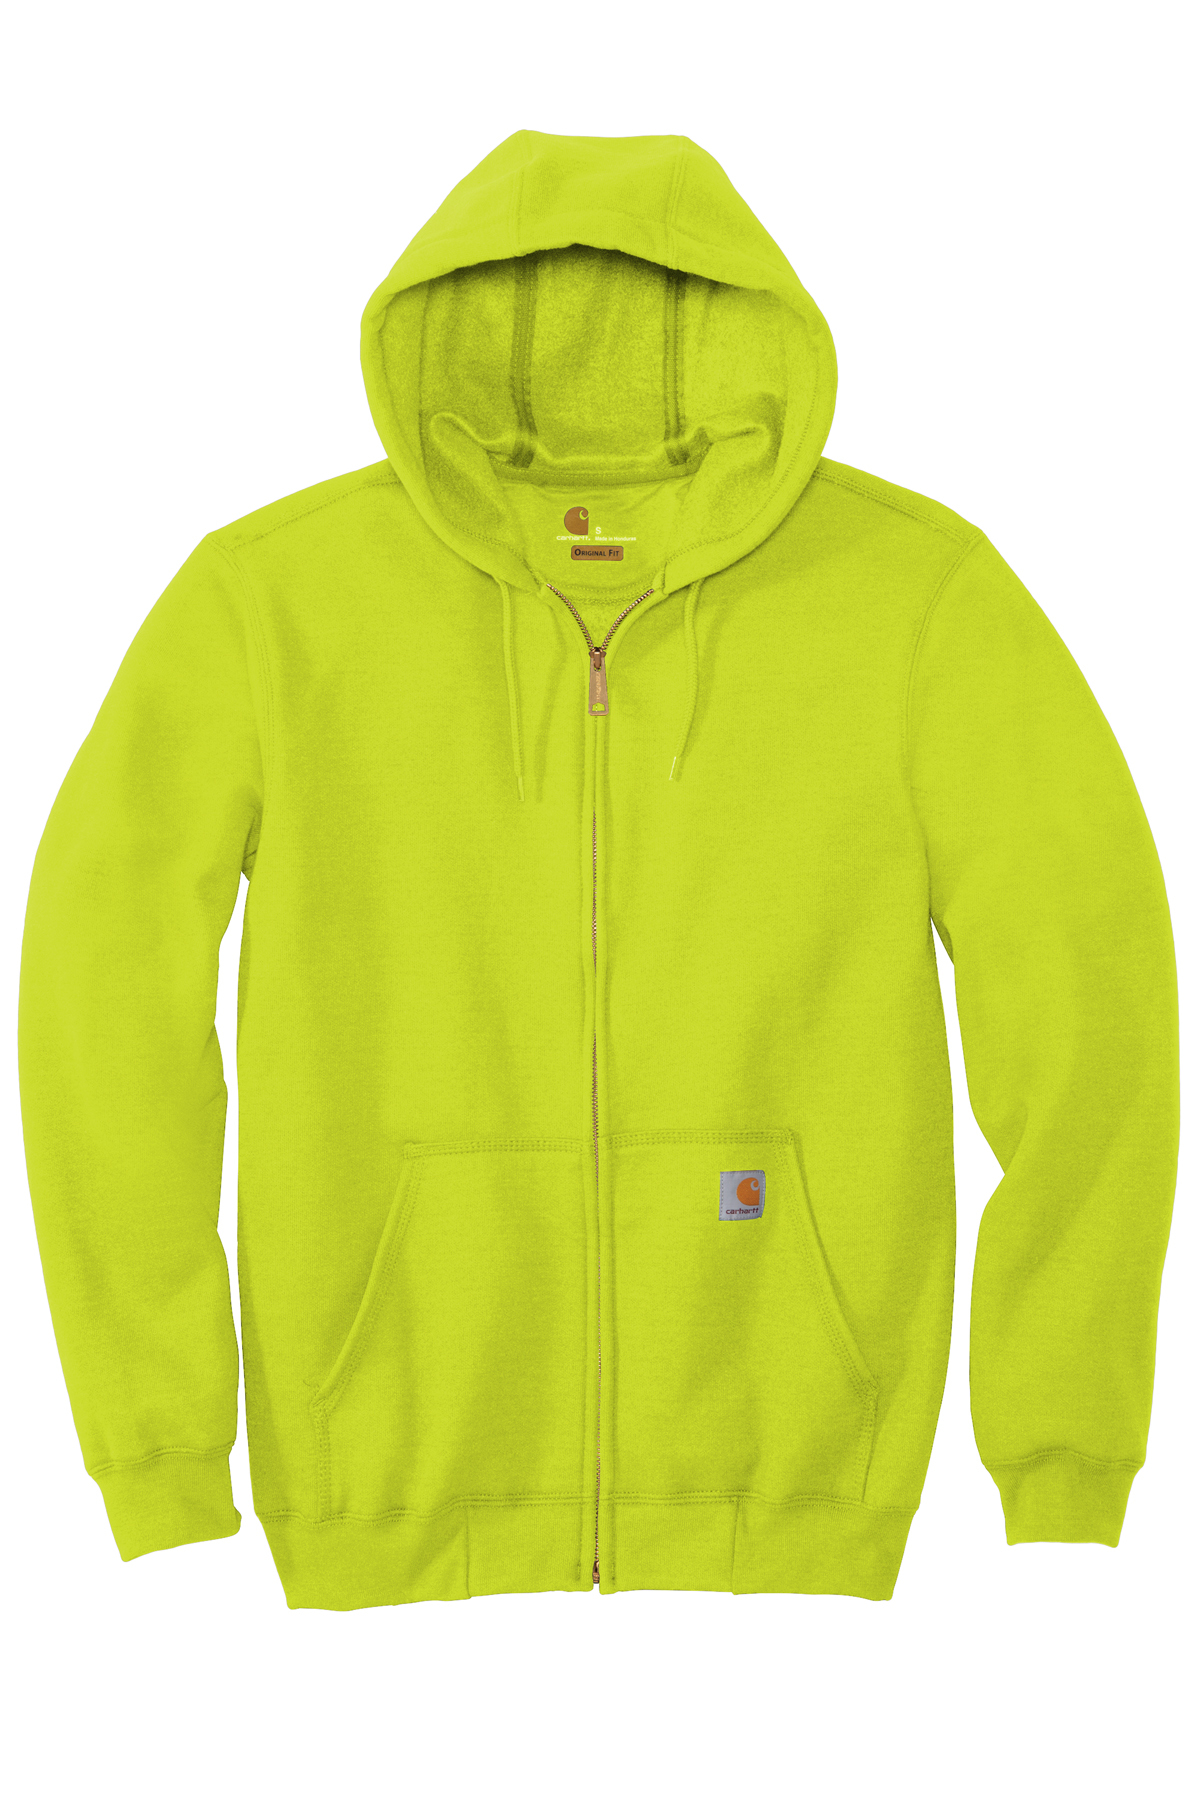 Carhartt Midweight Hooded Zip-Front Sweatshirt | Product | SanMar